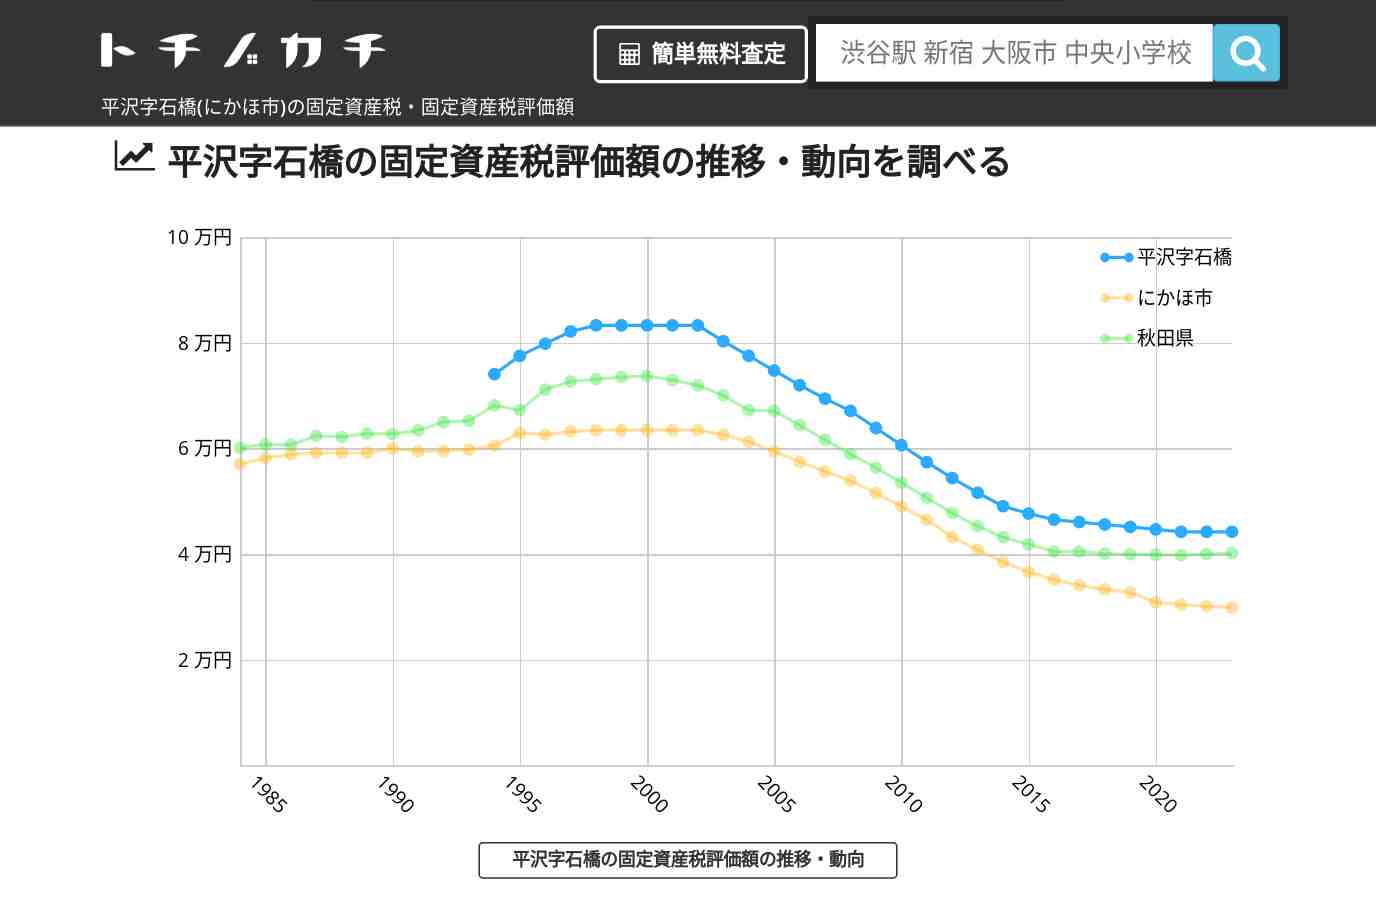 平沢字石橋(にかほ市)の固定資産税・固定資産税評価額 | トチノカチ